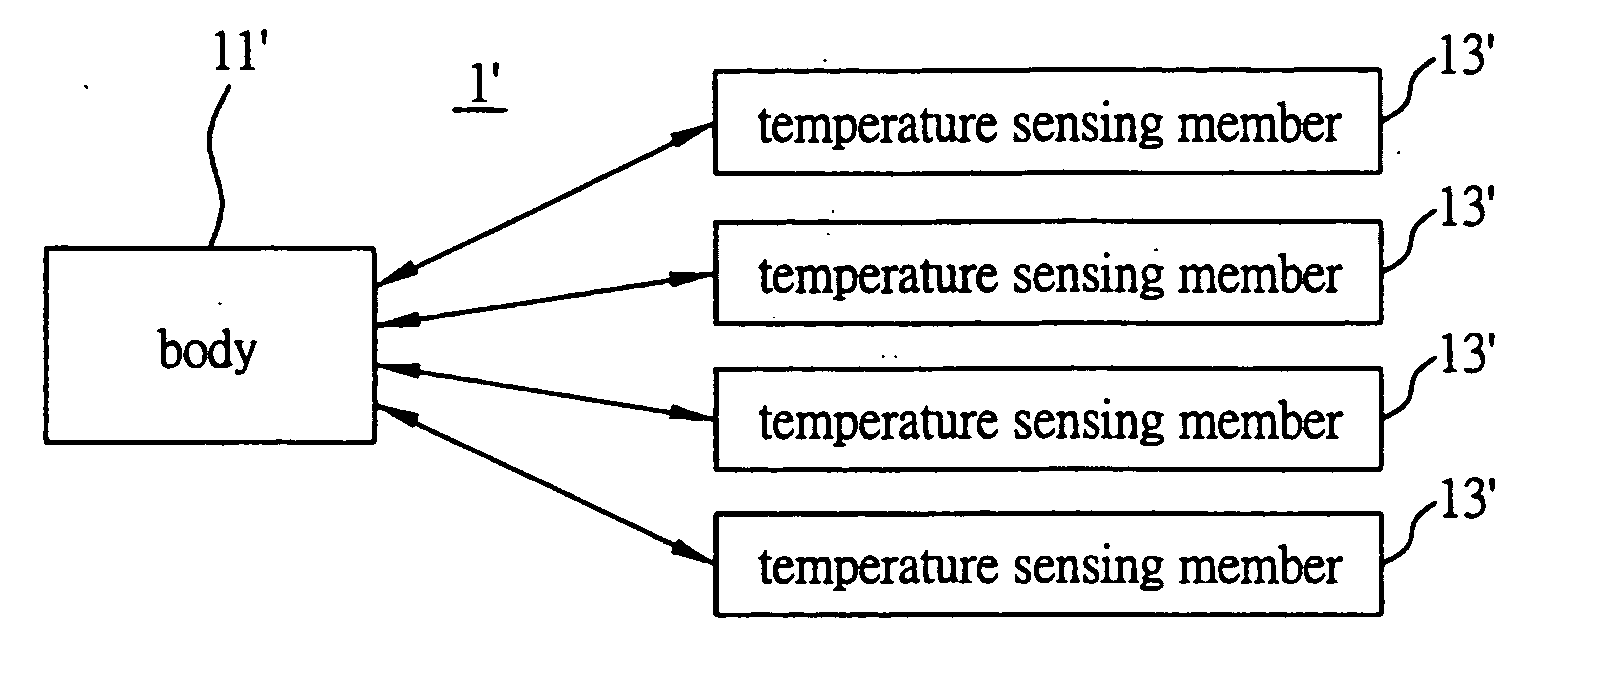 Temperature sensing device